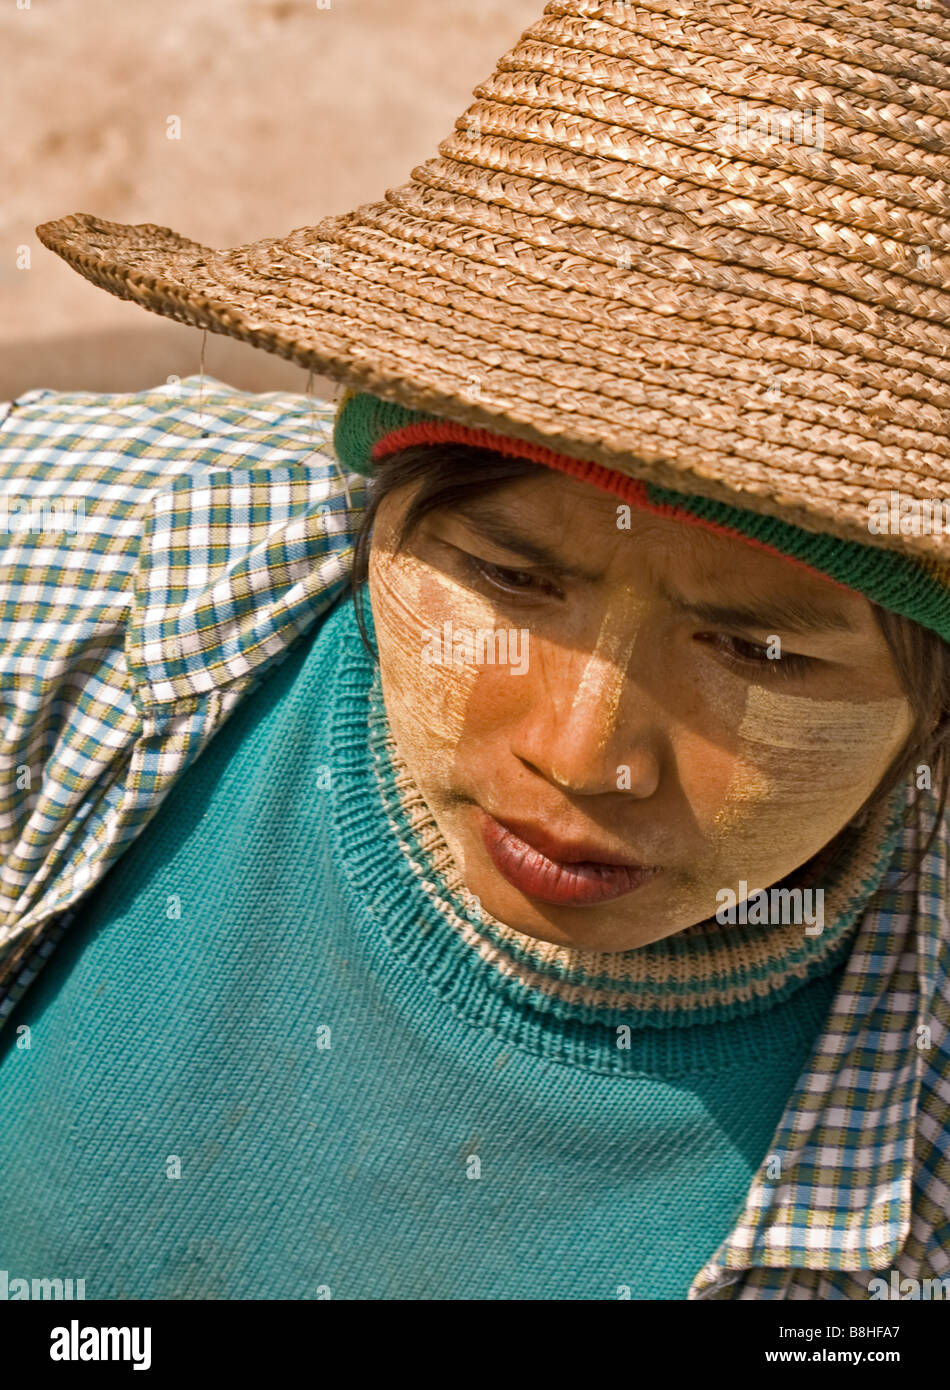 Bamar woman vendor in Shan State, Myanmar Stock Photo